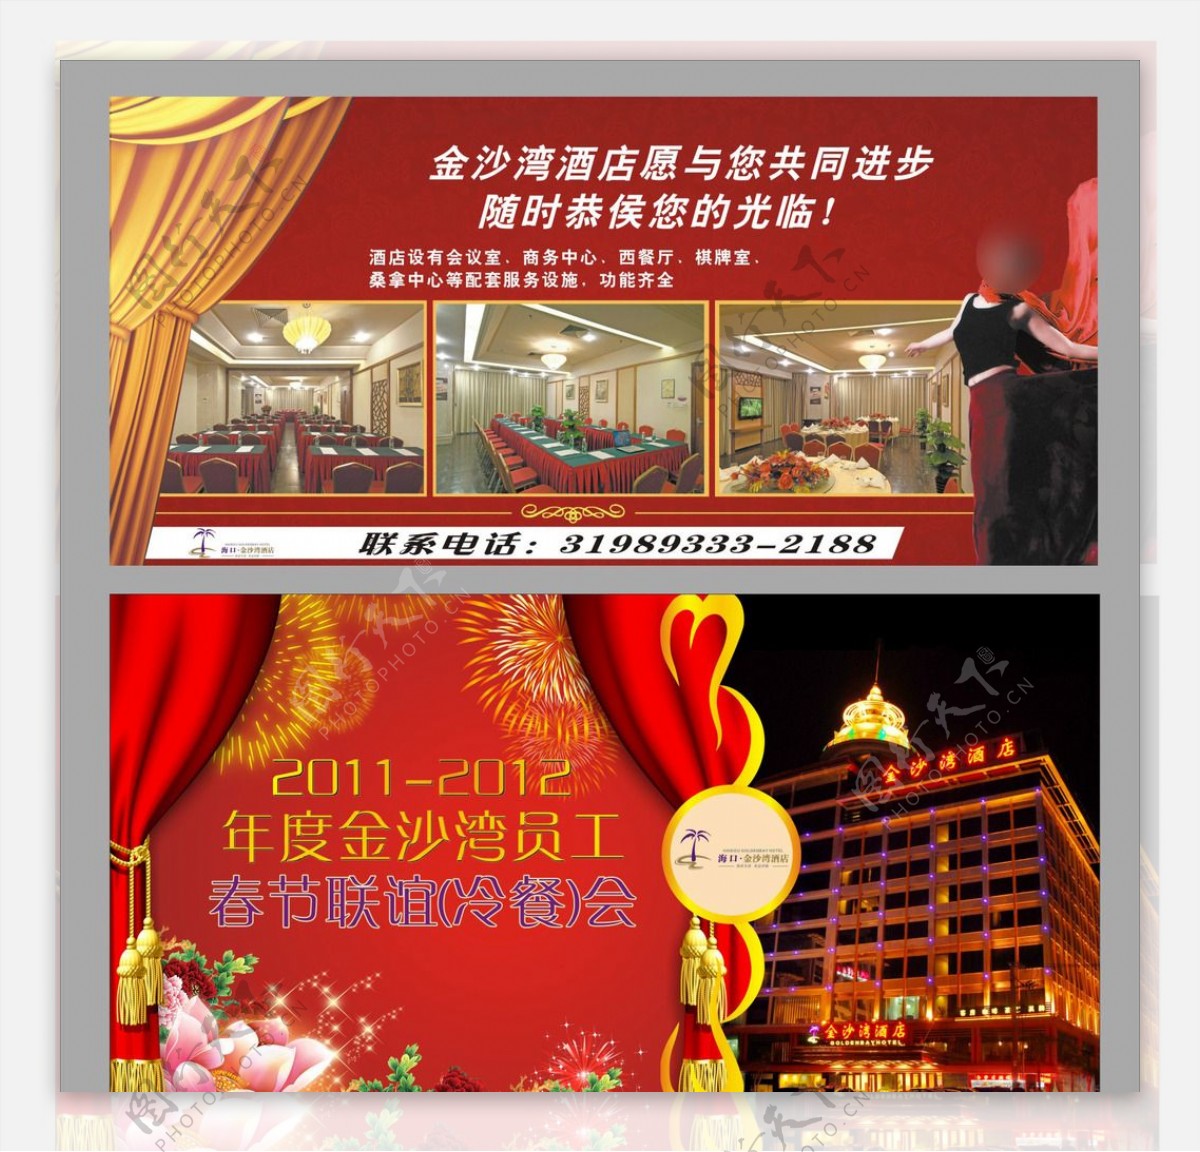 商务酒店招牌节日广告图片